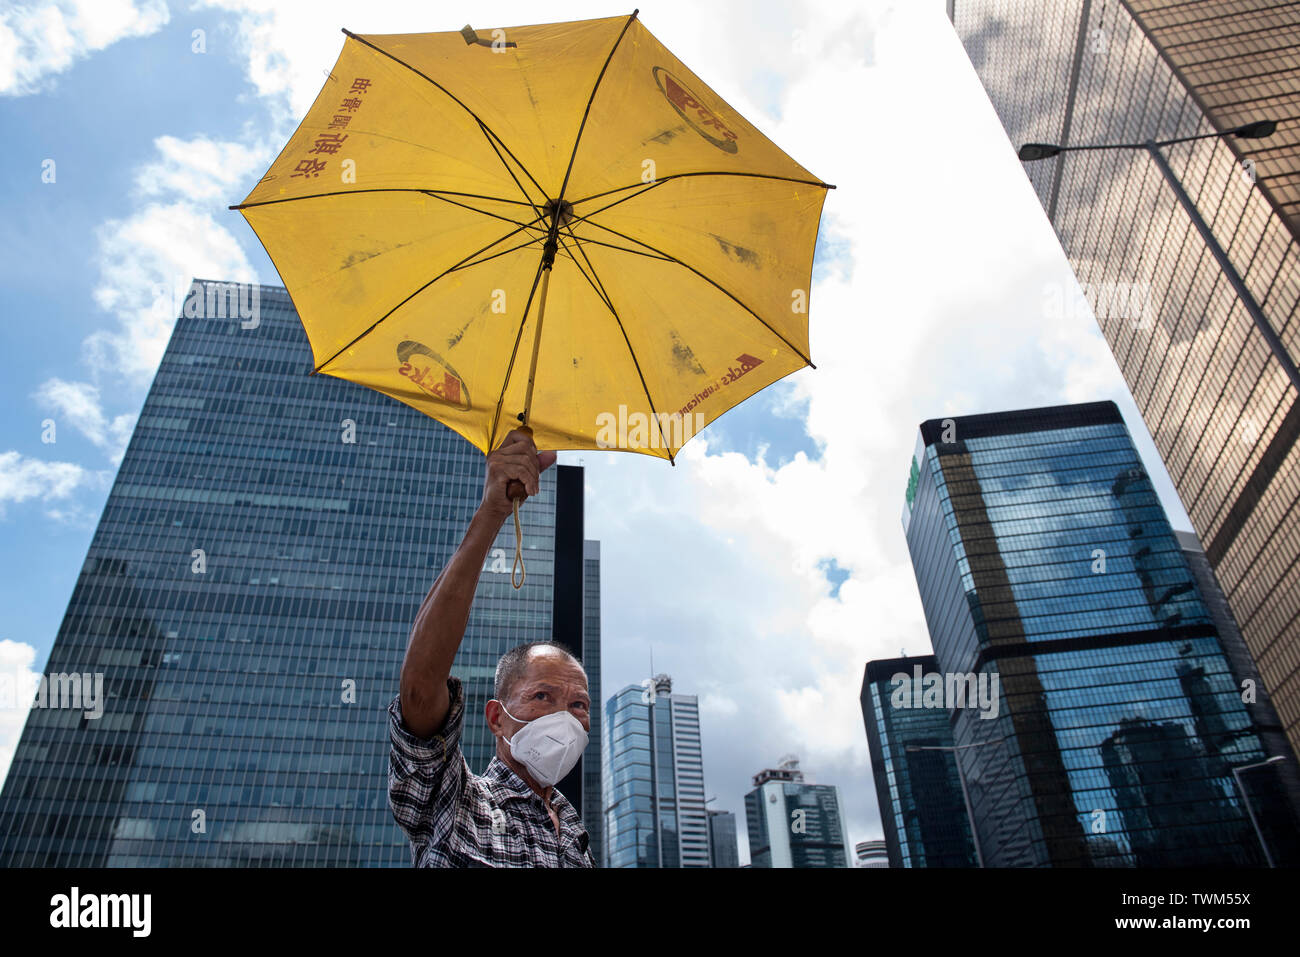 Eine Demonstrantin hält ein Yellow Umbrella, ein Symbol während der  Regenschirm Bewegung verwendet, während die letzten Demonstration in  Hongkong. Trotz versuchen, den Chief Executive Carrie Lam der Spannungen  durch die Zustimmung der